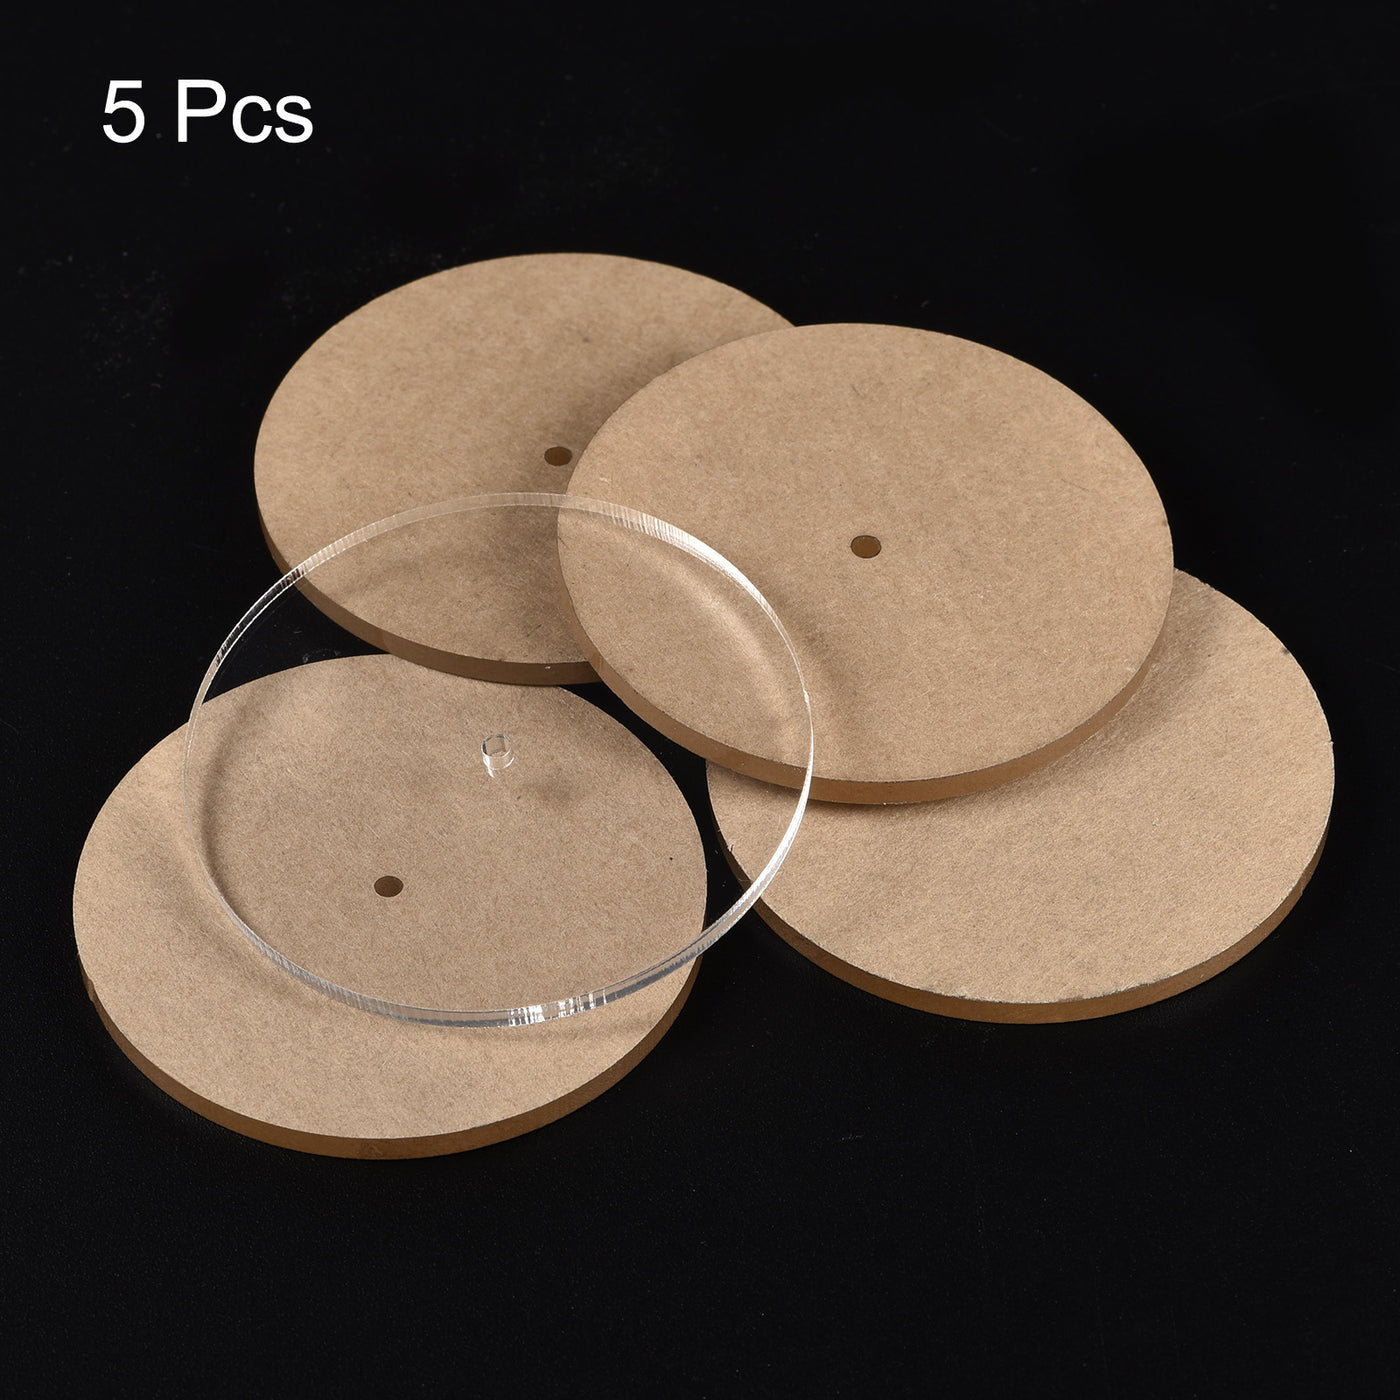 Harfington Blank Acrylic Discs with Hole for Vinyl Projects